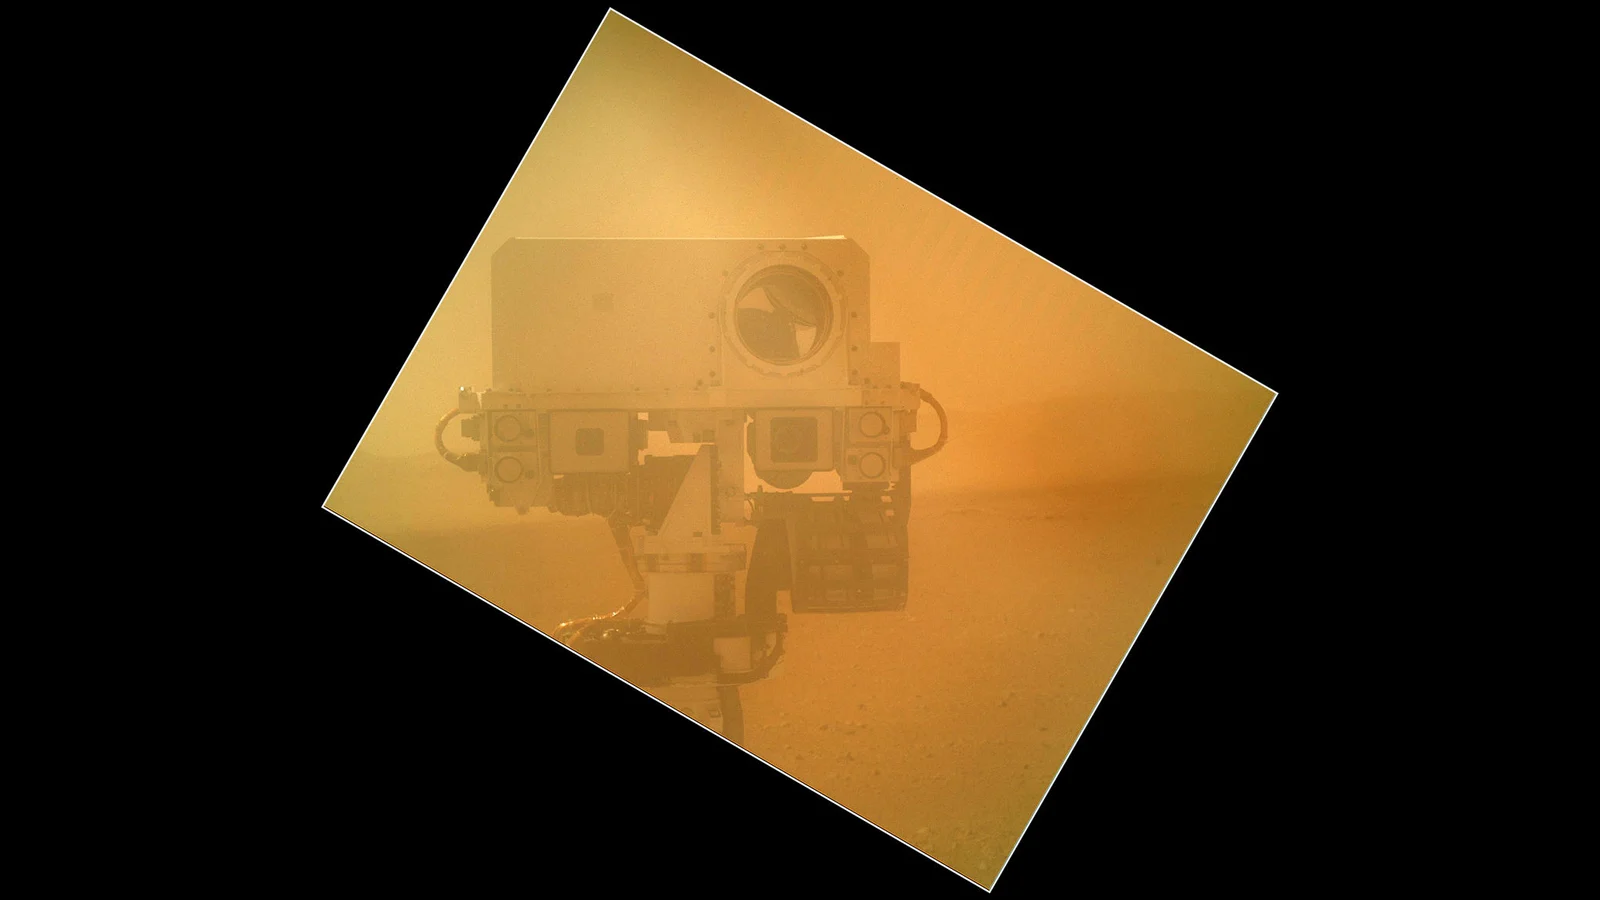 Curiosity-first-selfie-Sept-2012-NASA-JPL-Caltech